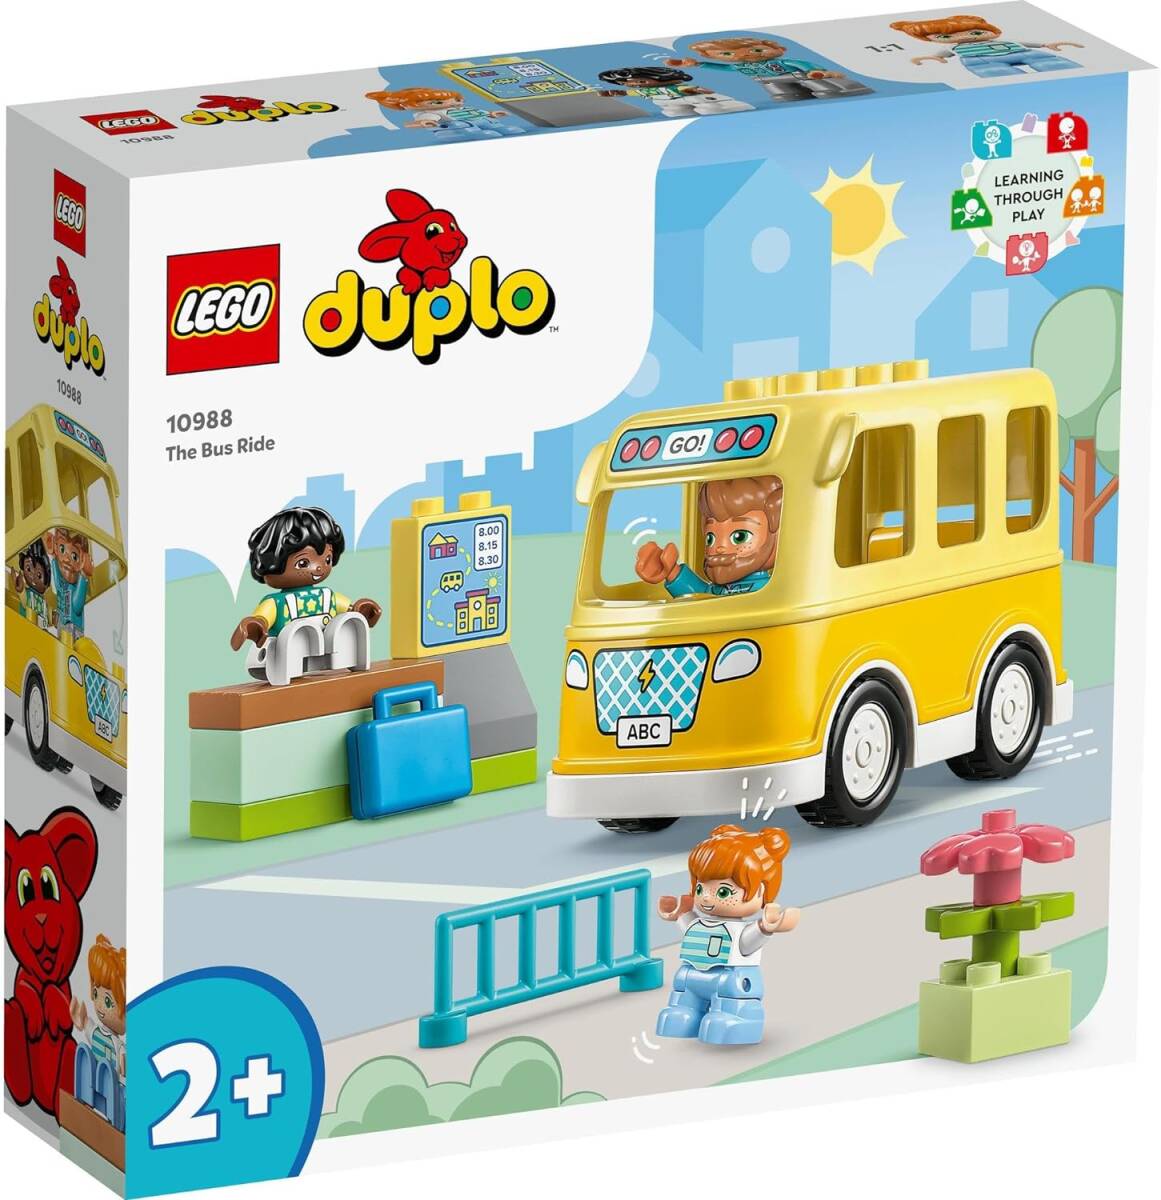 デュプロのまち スクールバス レゴ(LEGO) デュプロ デュプロのまち スクールバス 10988 おもちゃ ブロック プレゼント_画像2